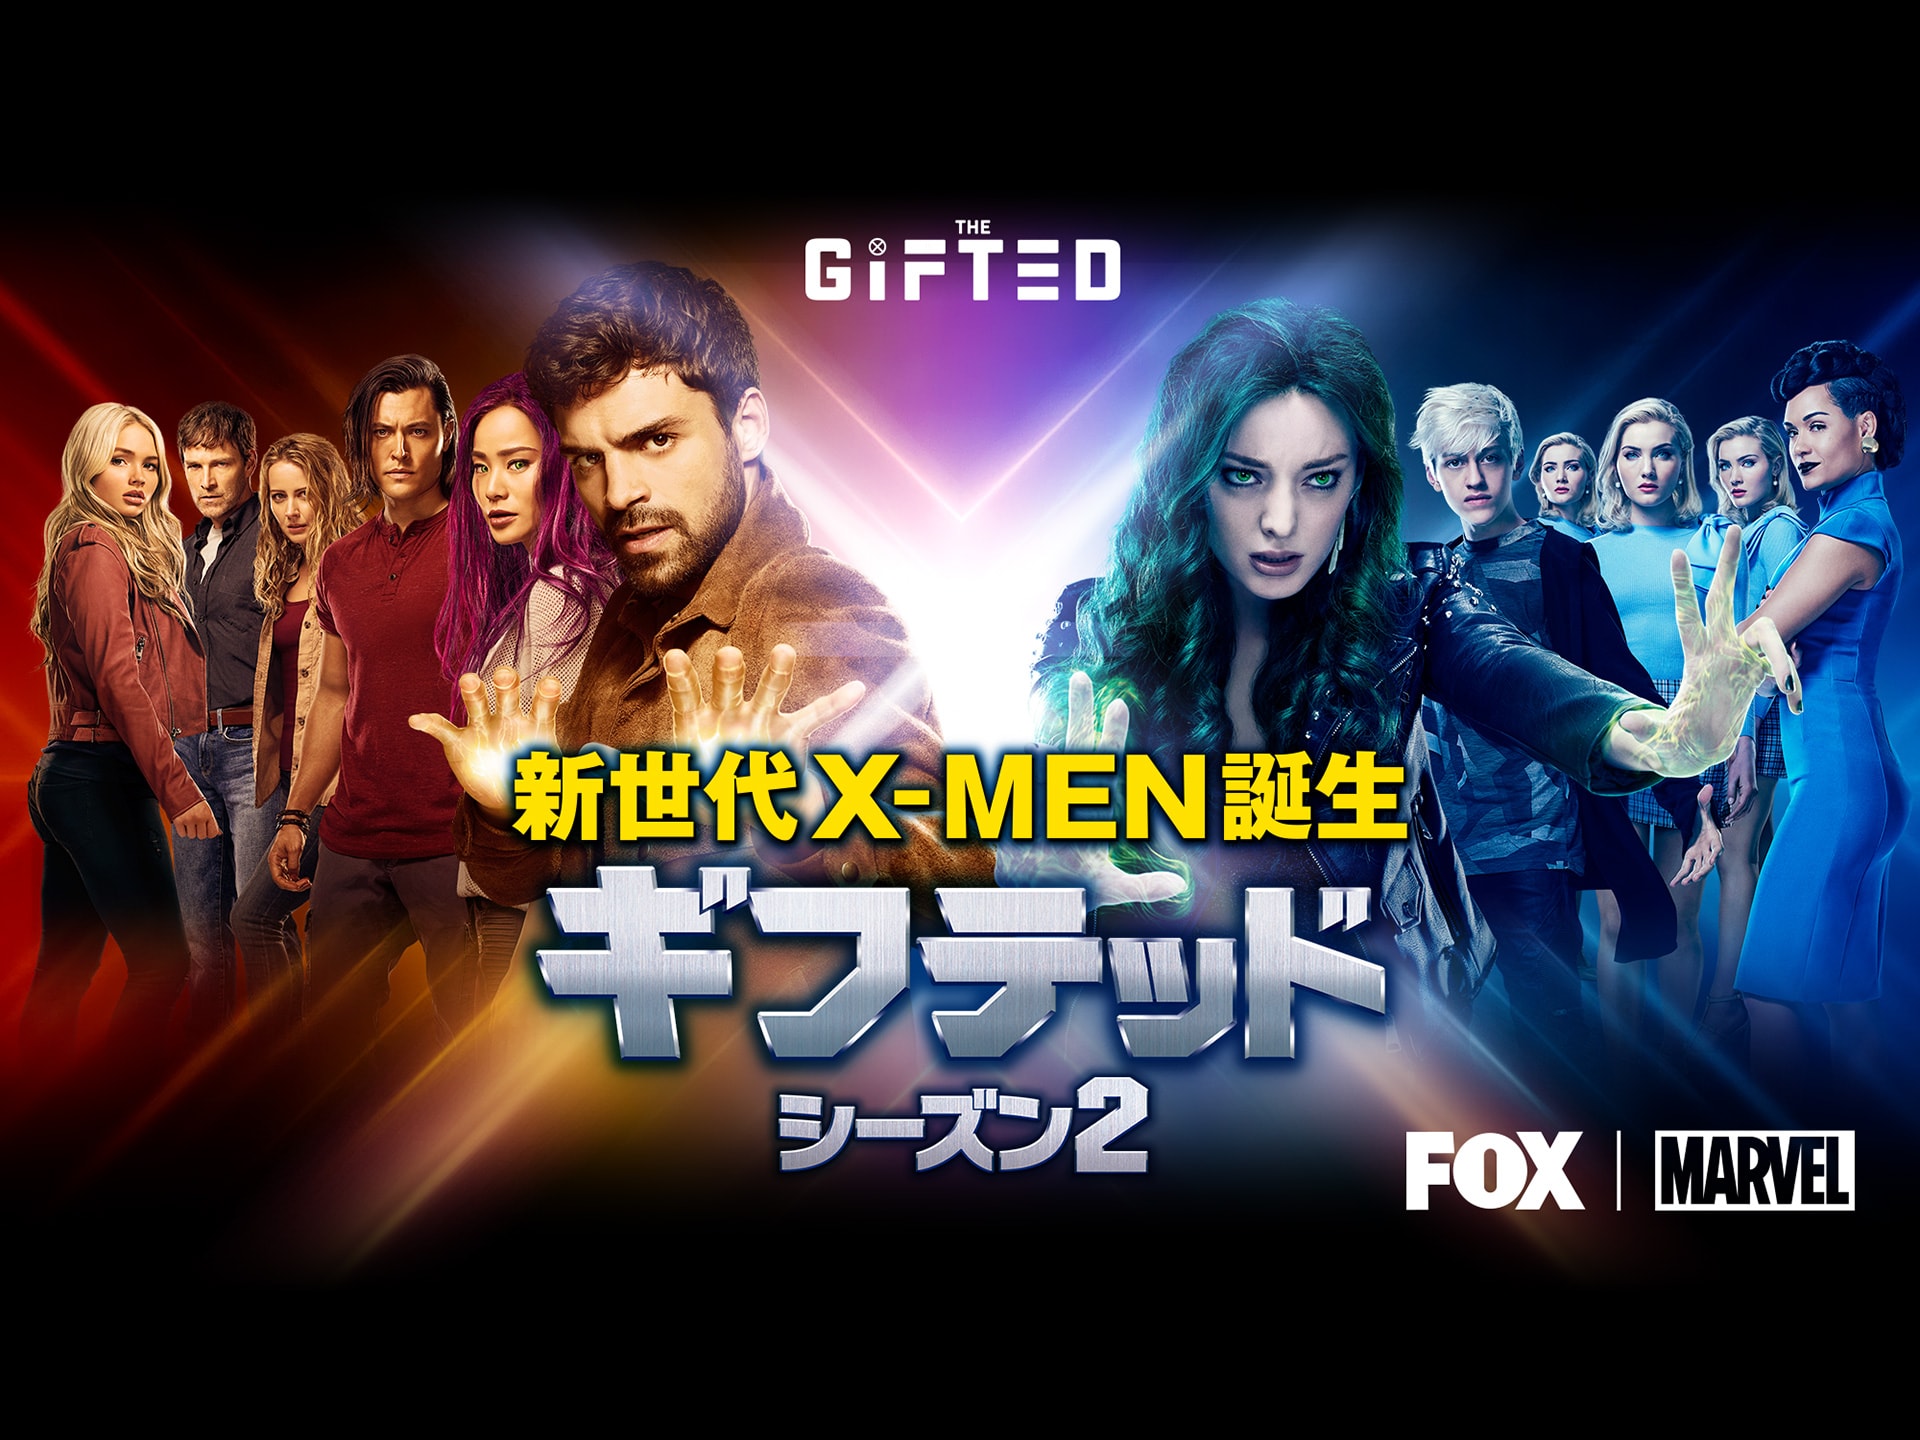 ギフテッド 新世代x Men誕生 シーズン2 第1話 第16話のまとめフル動画 初月無料 動画配信サービスのビデオマーケット